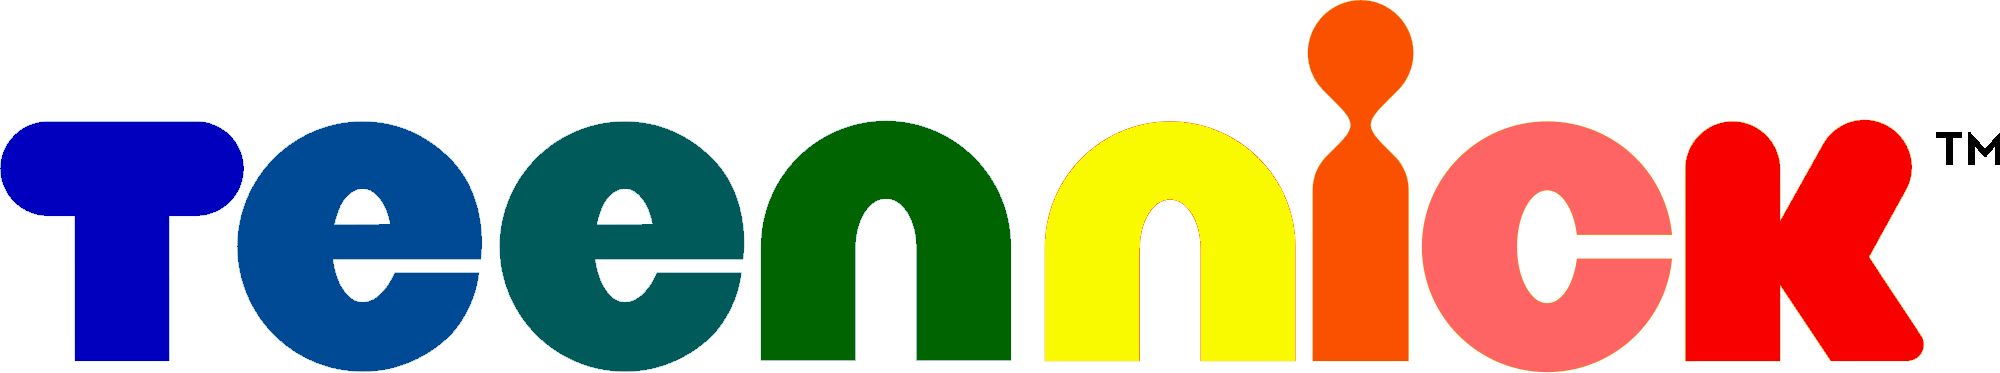 File:TeenNick 2019 logo.svg - Wikimedia Commons